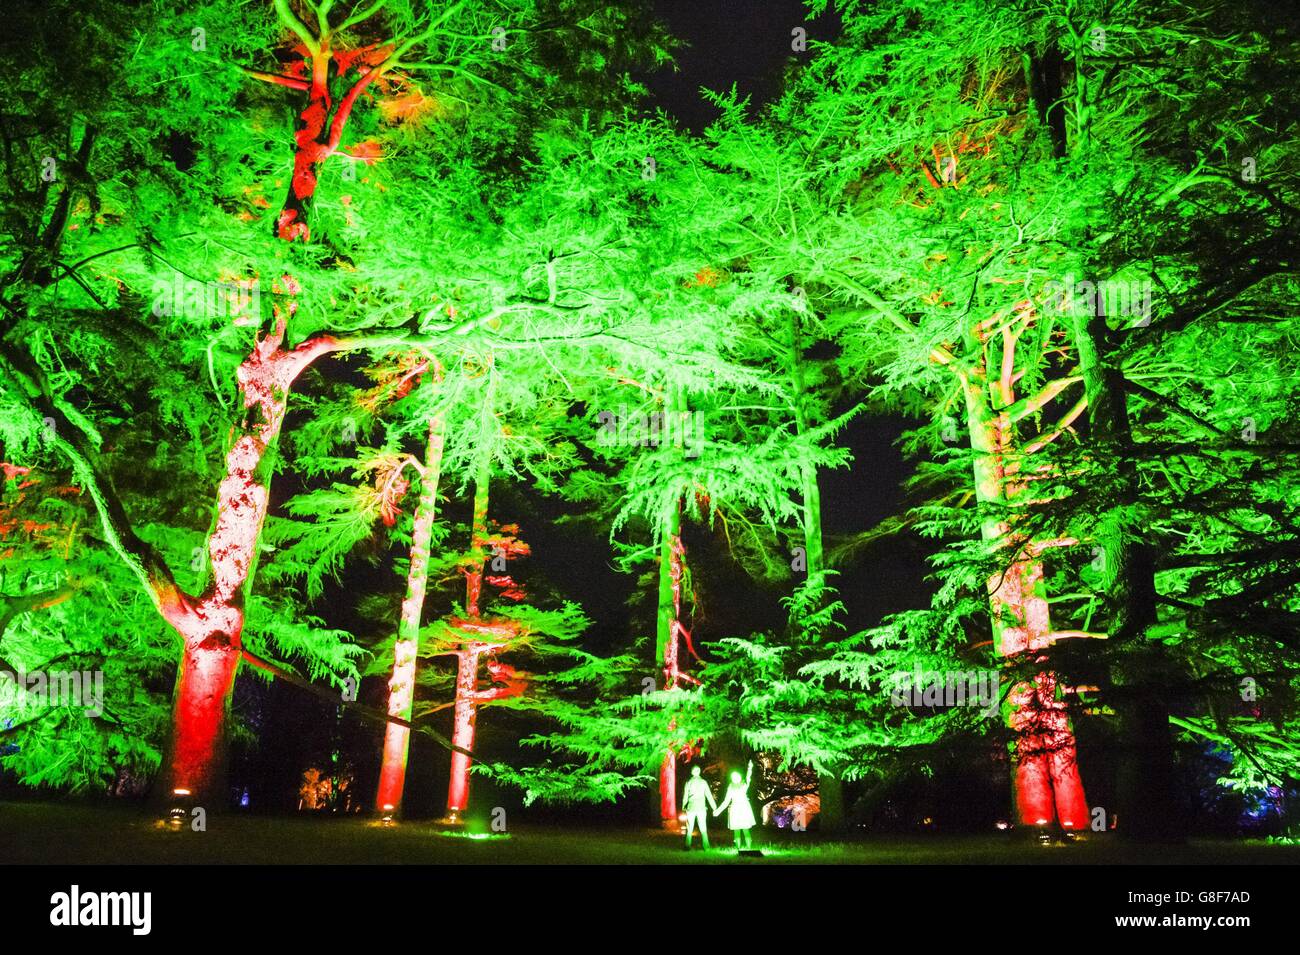 S National Arboretum umarmt den festlichen Geist mit seinem magischen verzauberten Weihnachtsereignis, mit einem beleuchteten Weg durch die Bäume und Wälder. Stockfoto